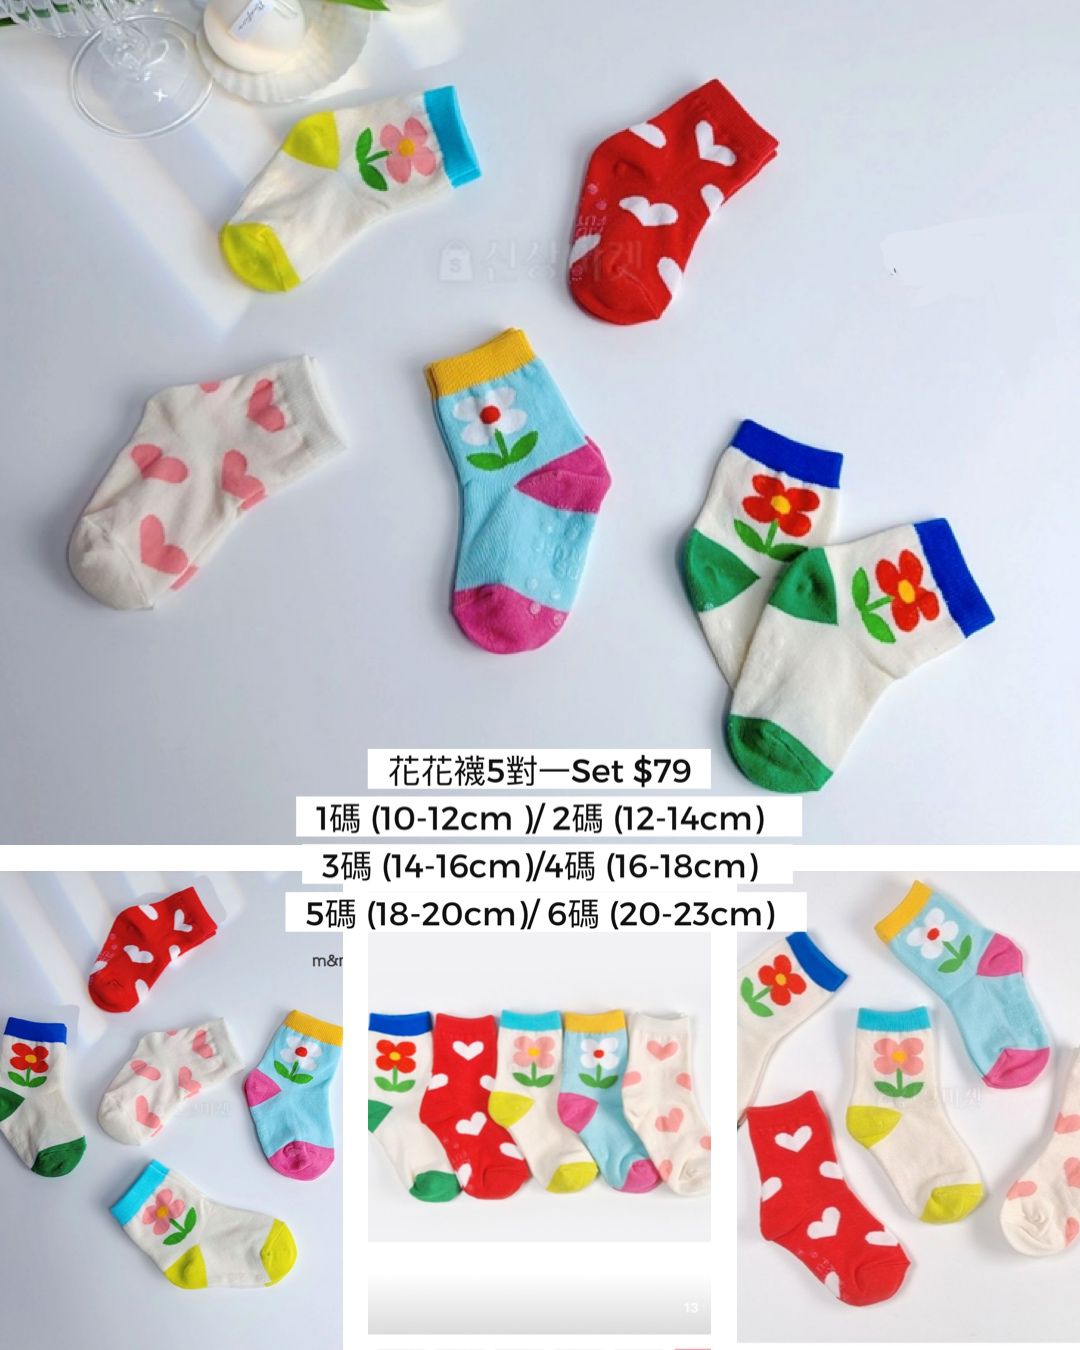 Floral socks (1set) 花花襪併心心襪